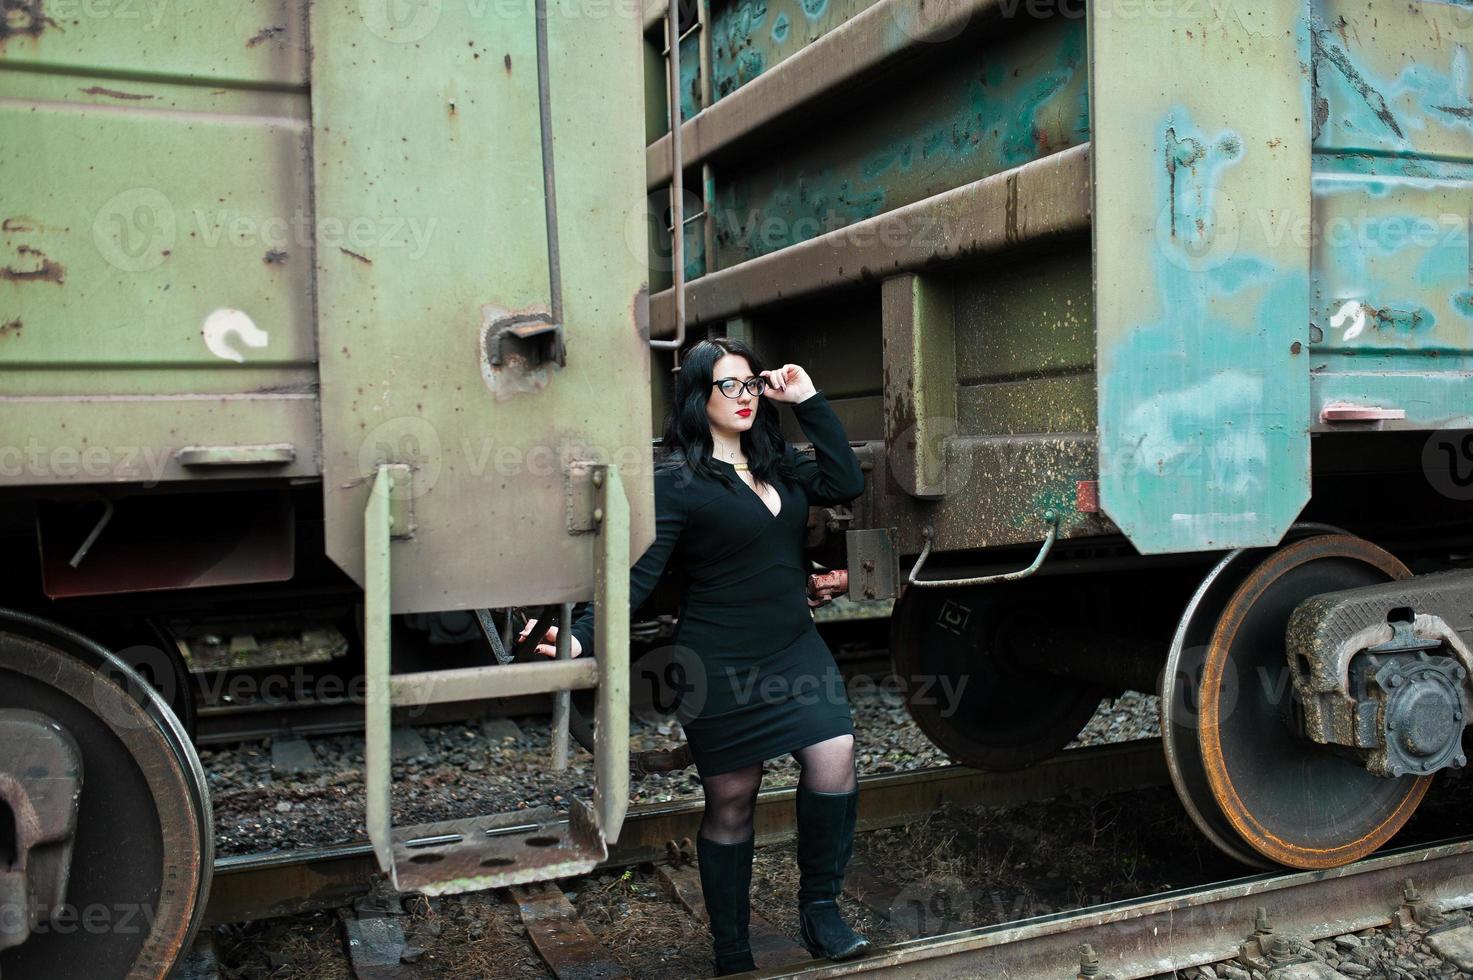 menina morena usa preto com óculos na estação ferroviária. foto